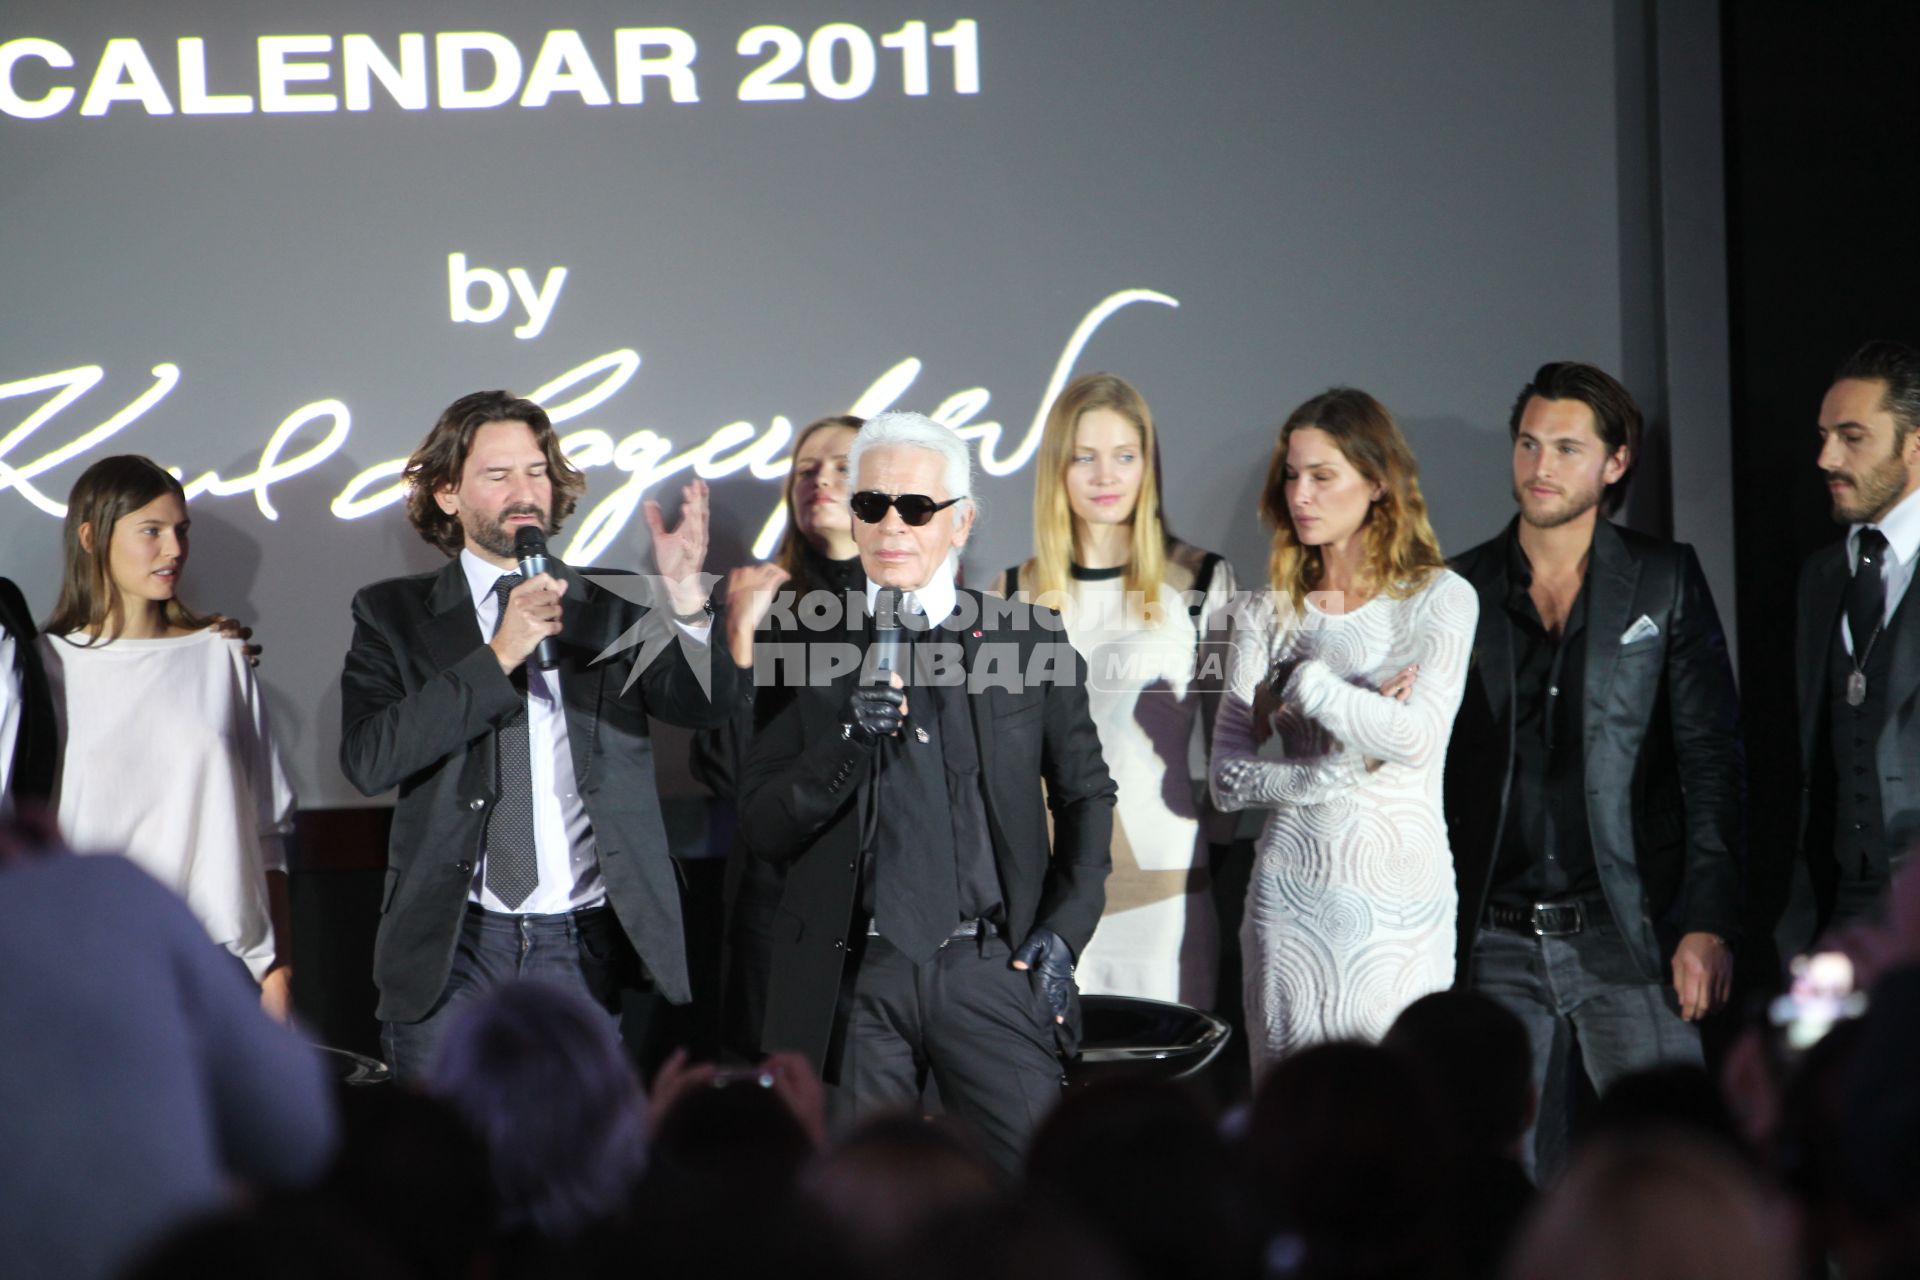 Писатель Фредерик Бегбедер (второй слева) и модельер Карл Лагерфельд (в центре) с моделями, которые участвовали в съемках для нового календаря Pirell, в отеле `Ritz Carlton`.